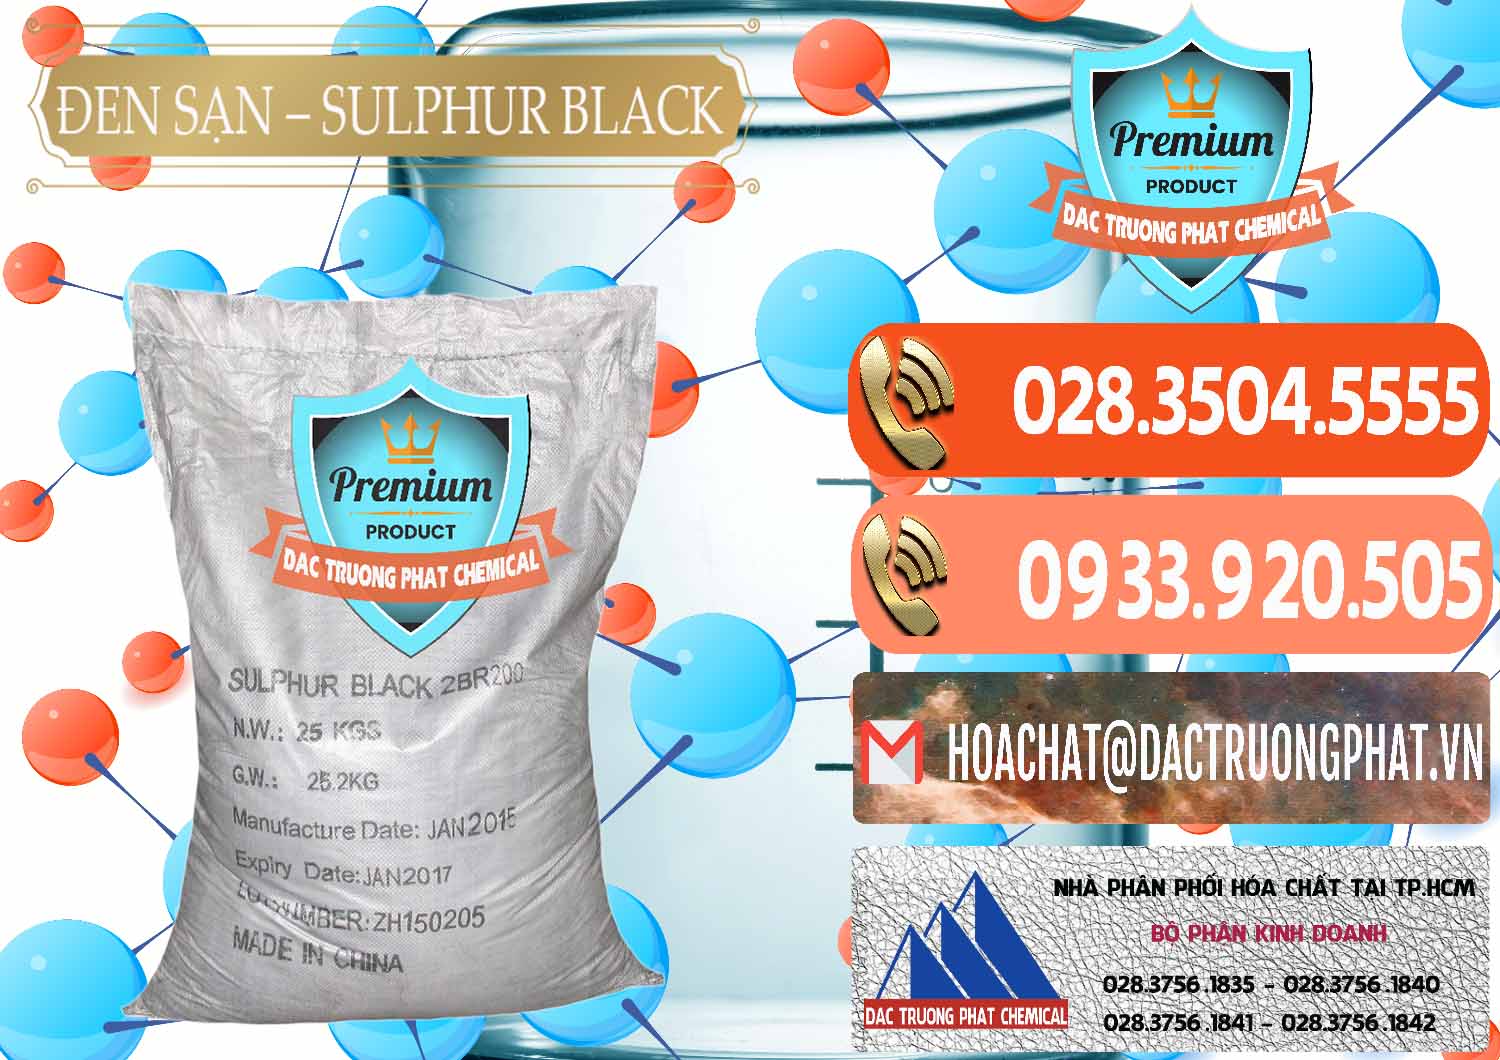 Nơi chuyên cung cấp và bán Đen Sạn – Sulphur Black Trung Quốc China - 0062 - Công ty chuyên cung cấp và nhập khẩu hóa chất tại TP.HCM - hoachatmientay.com